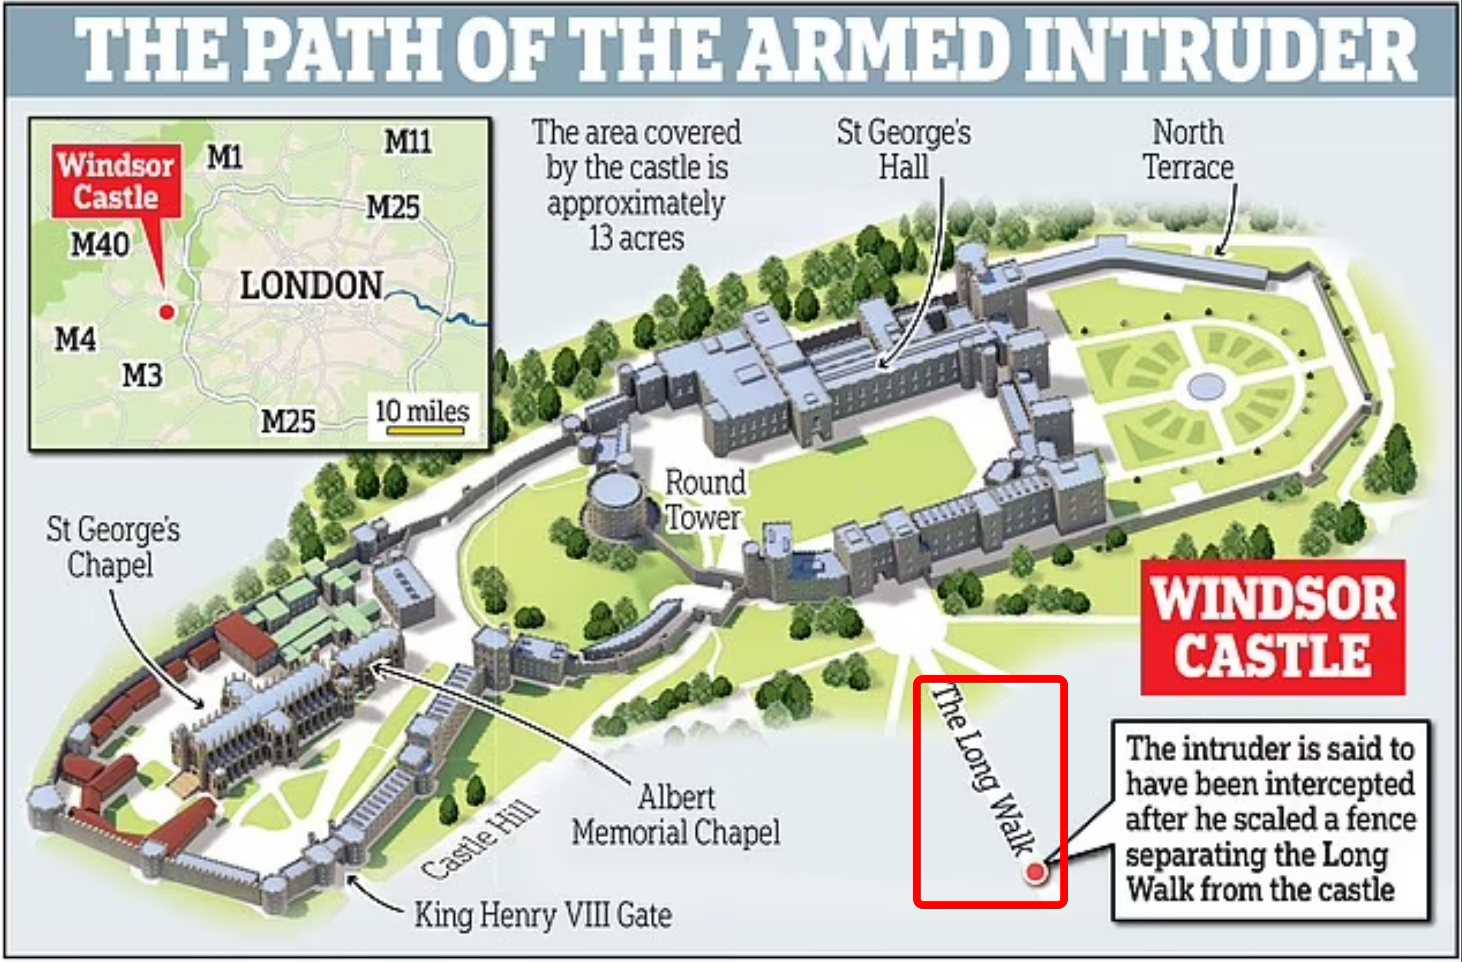 英国温莎城堡地图，该男子在红框处“长道”处被捕